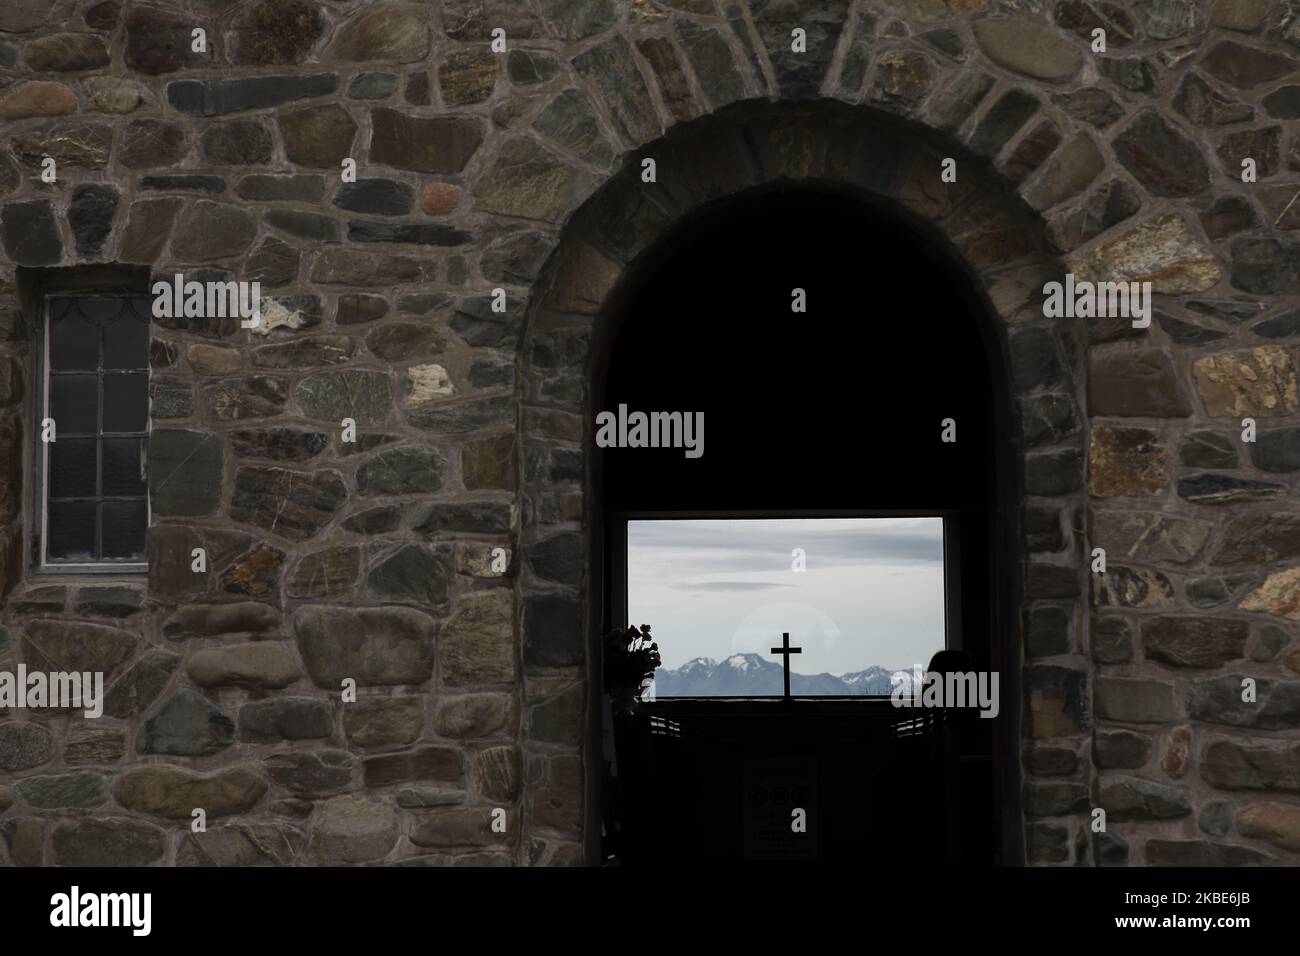 Die südlichen Alpen sind am 10. Januar 2020 hinter dem Kreuz in der Kirche des Guten Hirten am See TekapoÂ auf der zentralen Südinsel von New ZealandÂ zu sehen.Â Tekapo ist eine der beliebtesten Touristenattraktionen Neuseelands.Â Â (Foto: Sanka Vidanagama/NurPhoto) Stockfoto